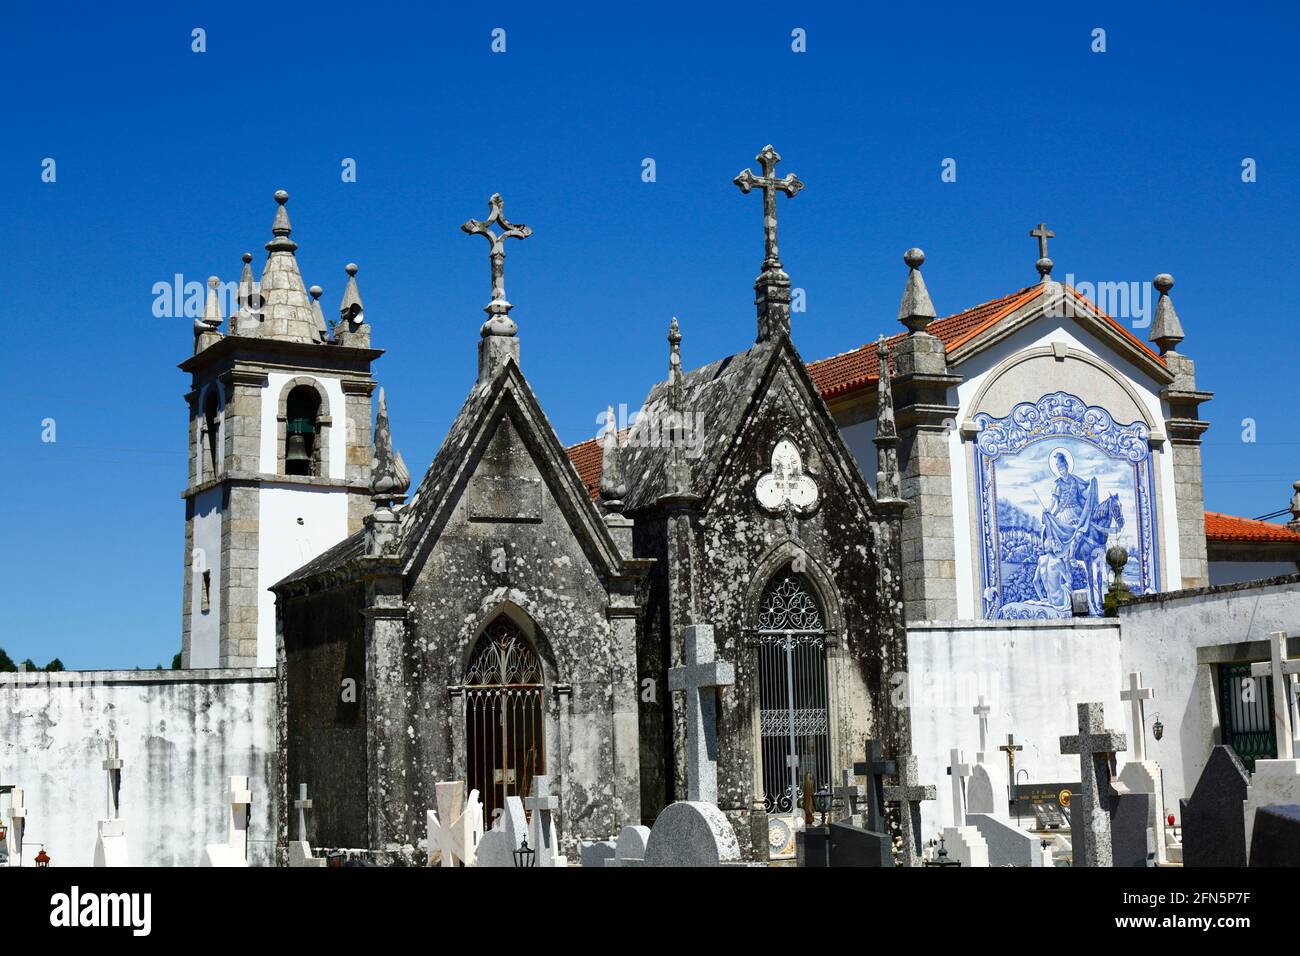 Mausolées dans un cimetière près de l'église San Martinho, village de Freixieiro de Soutelo, province de Minho, Portugal Banque D'Images